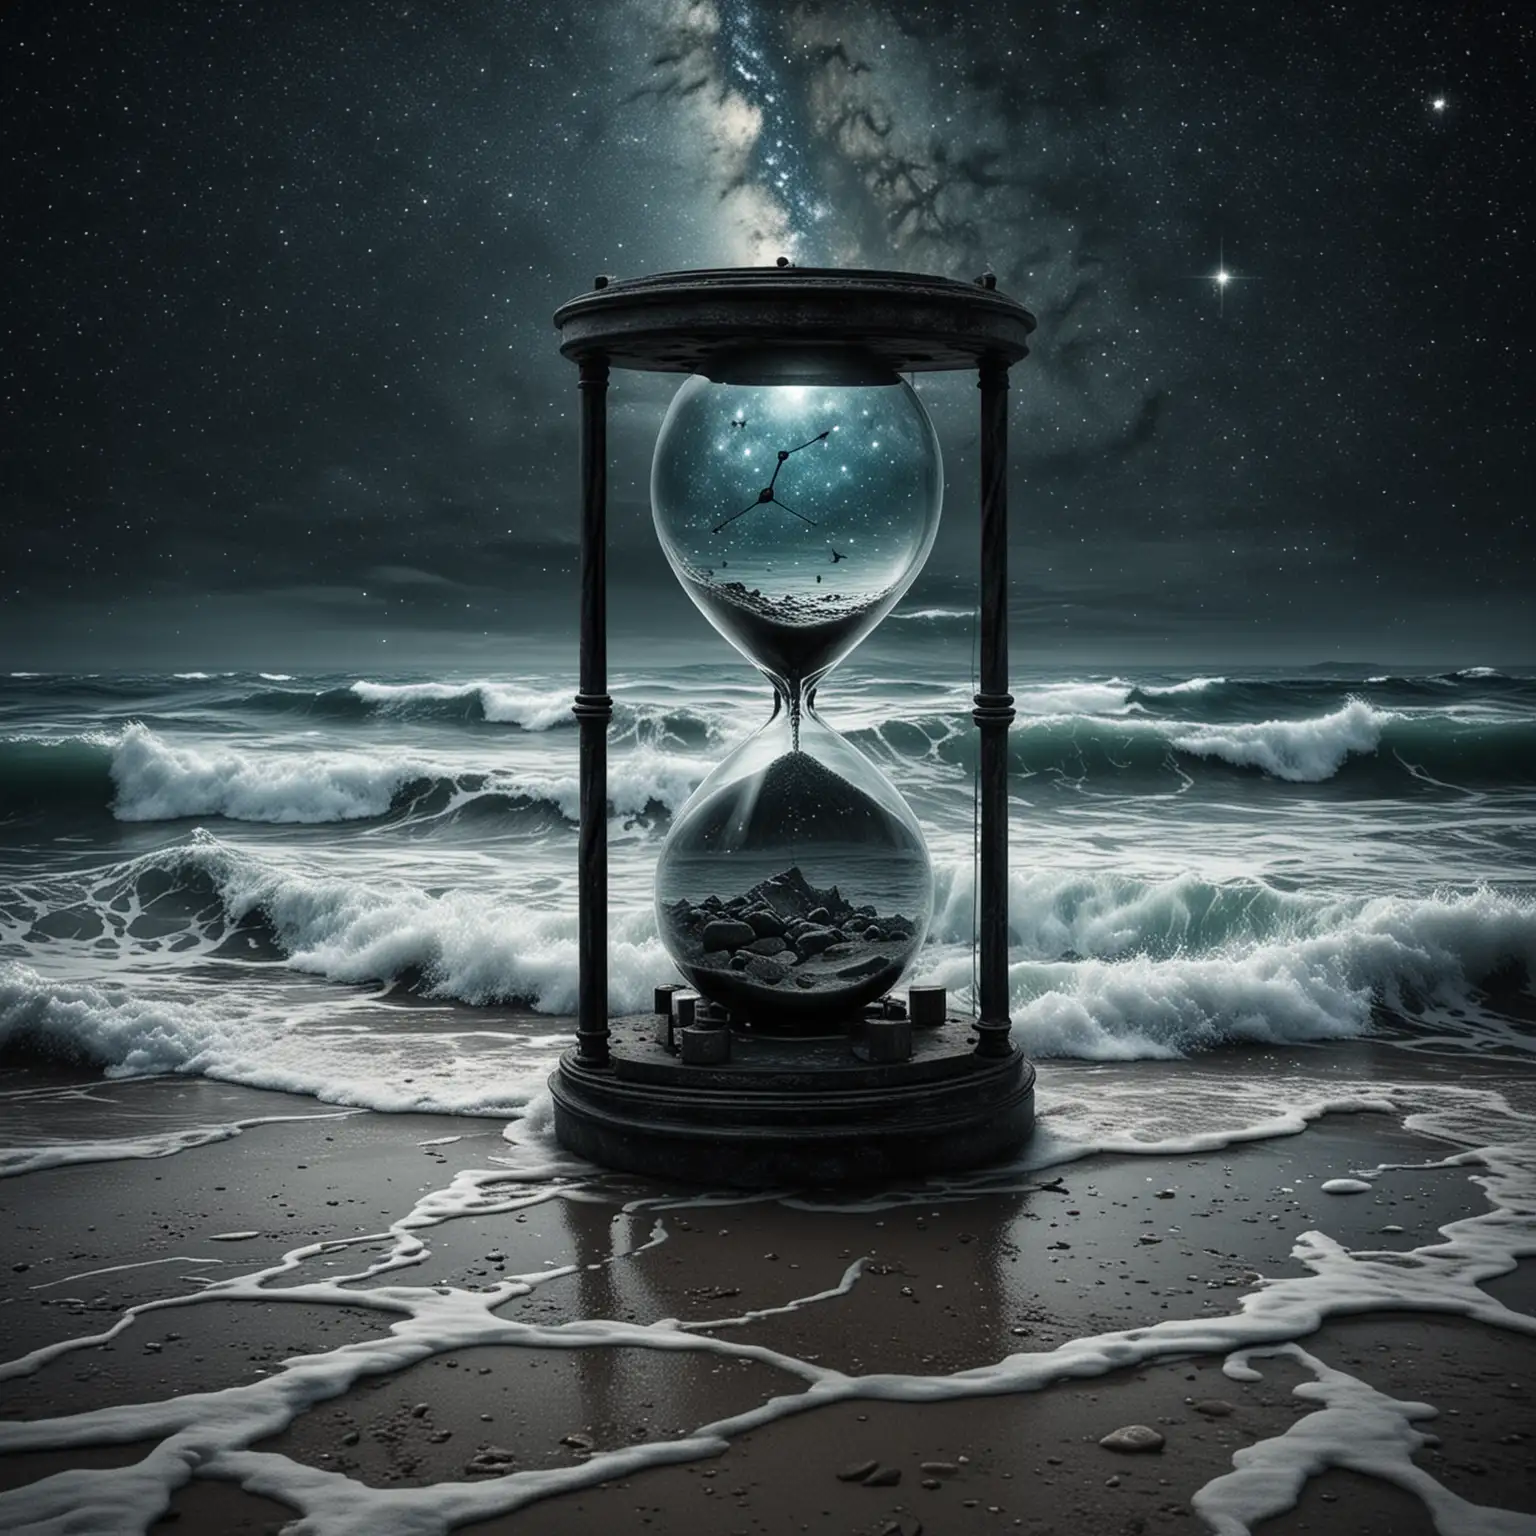 Постер "Тьма времен" может воплощать идею загадочности и неизведанных пространств времени. Фоном можно использовать изображение звездного океана, чтобы подчеркнуть бесконечность времени и пространства. Можно также добавить элементы времени, такие как сломанные песочные часы, чтобы подчеркнуть течение времени и его мистическую природу